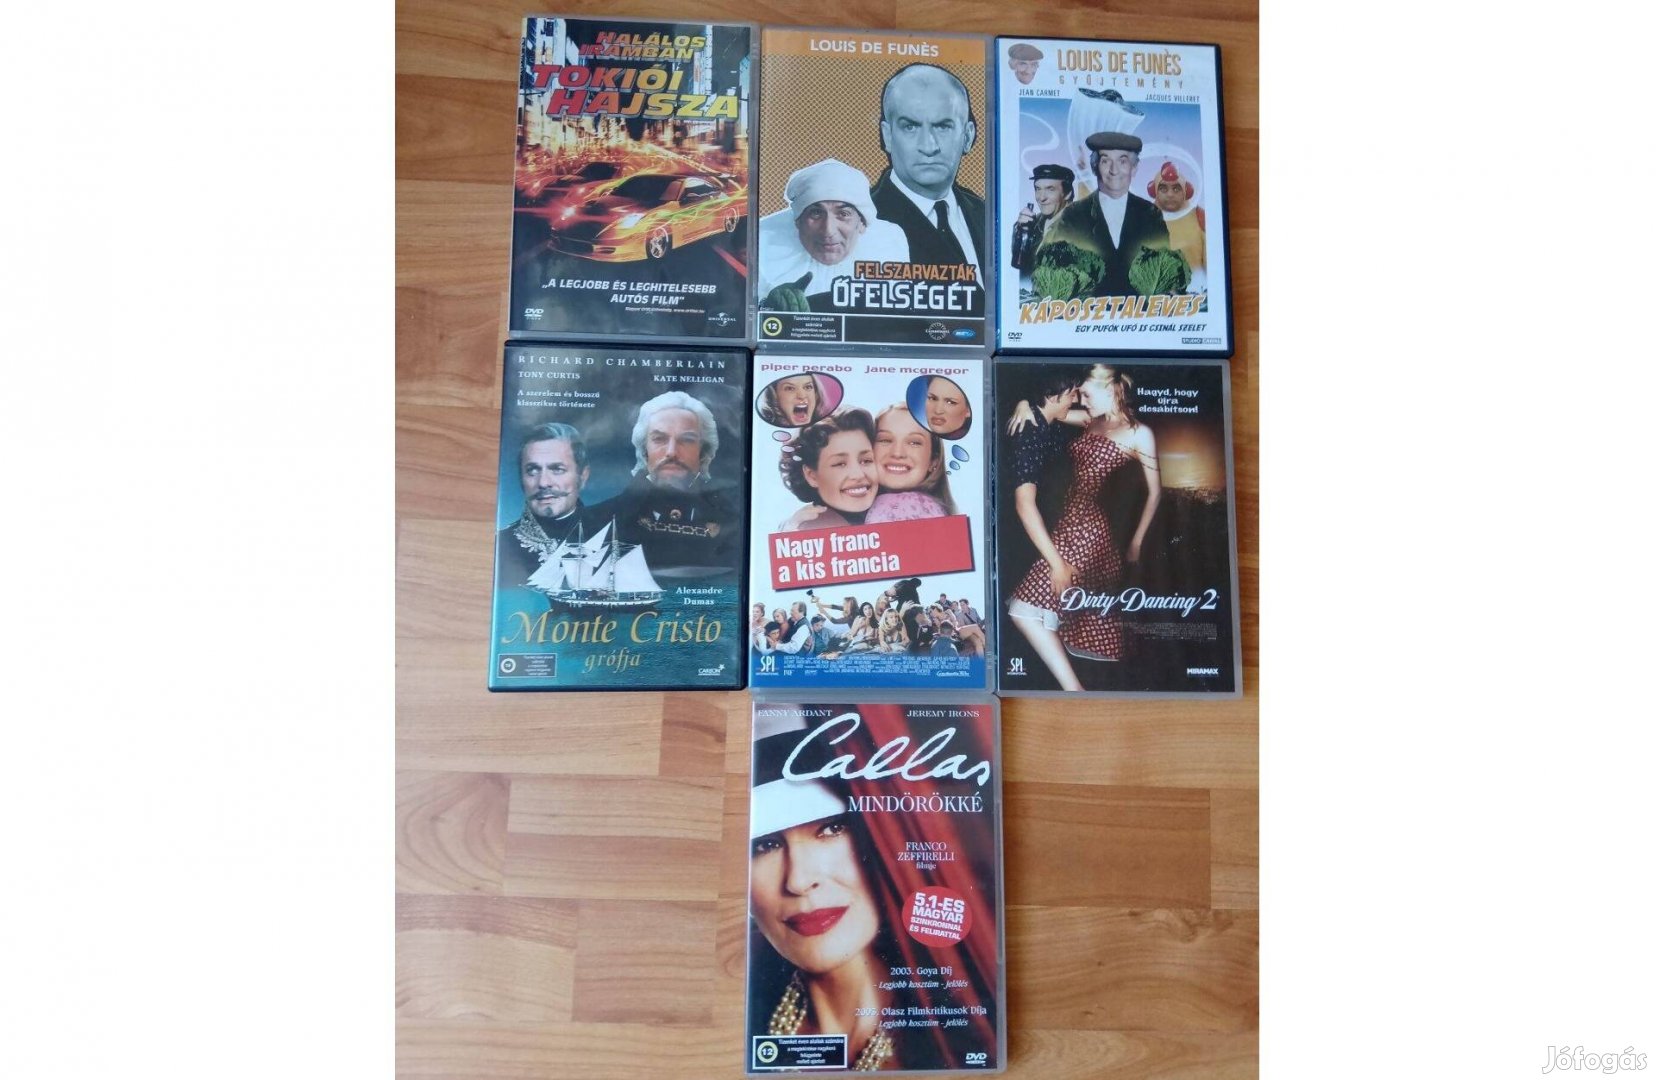 DVD filmek reklám áron